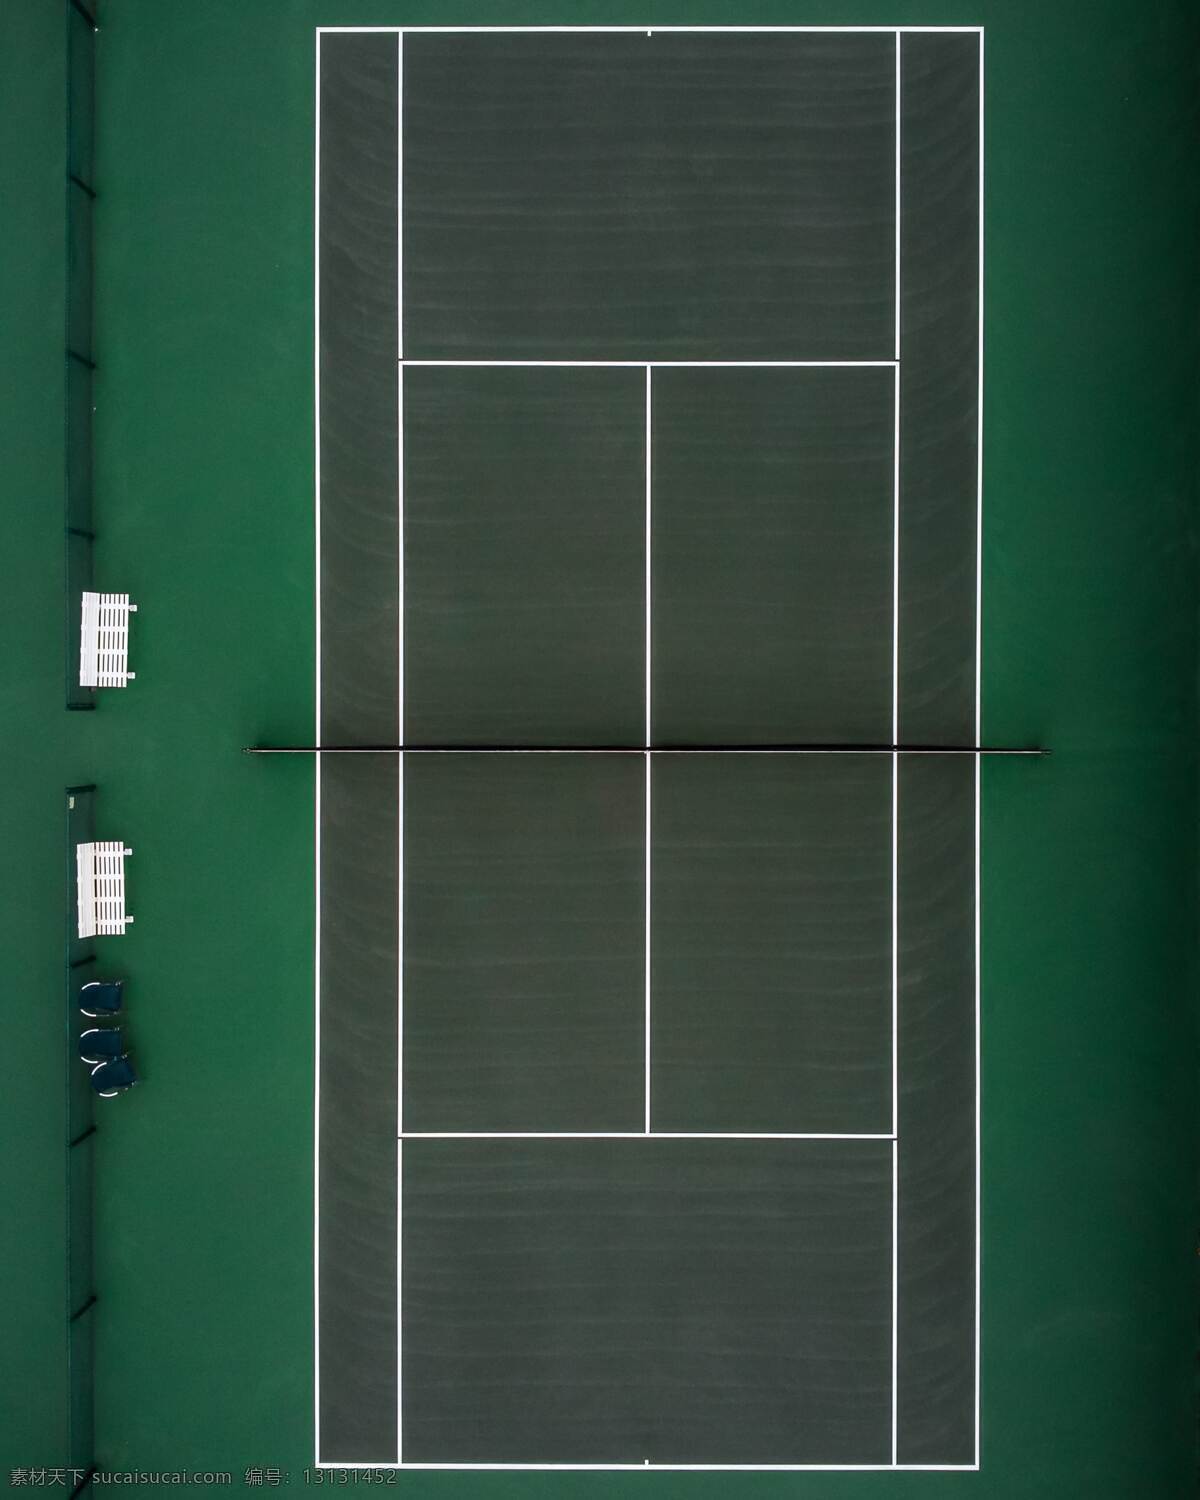 网球场绿色 网球 网球场 绿色网球场 打球 分割 分格 球 生活百科 体育用品